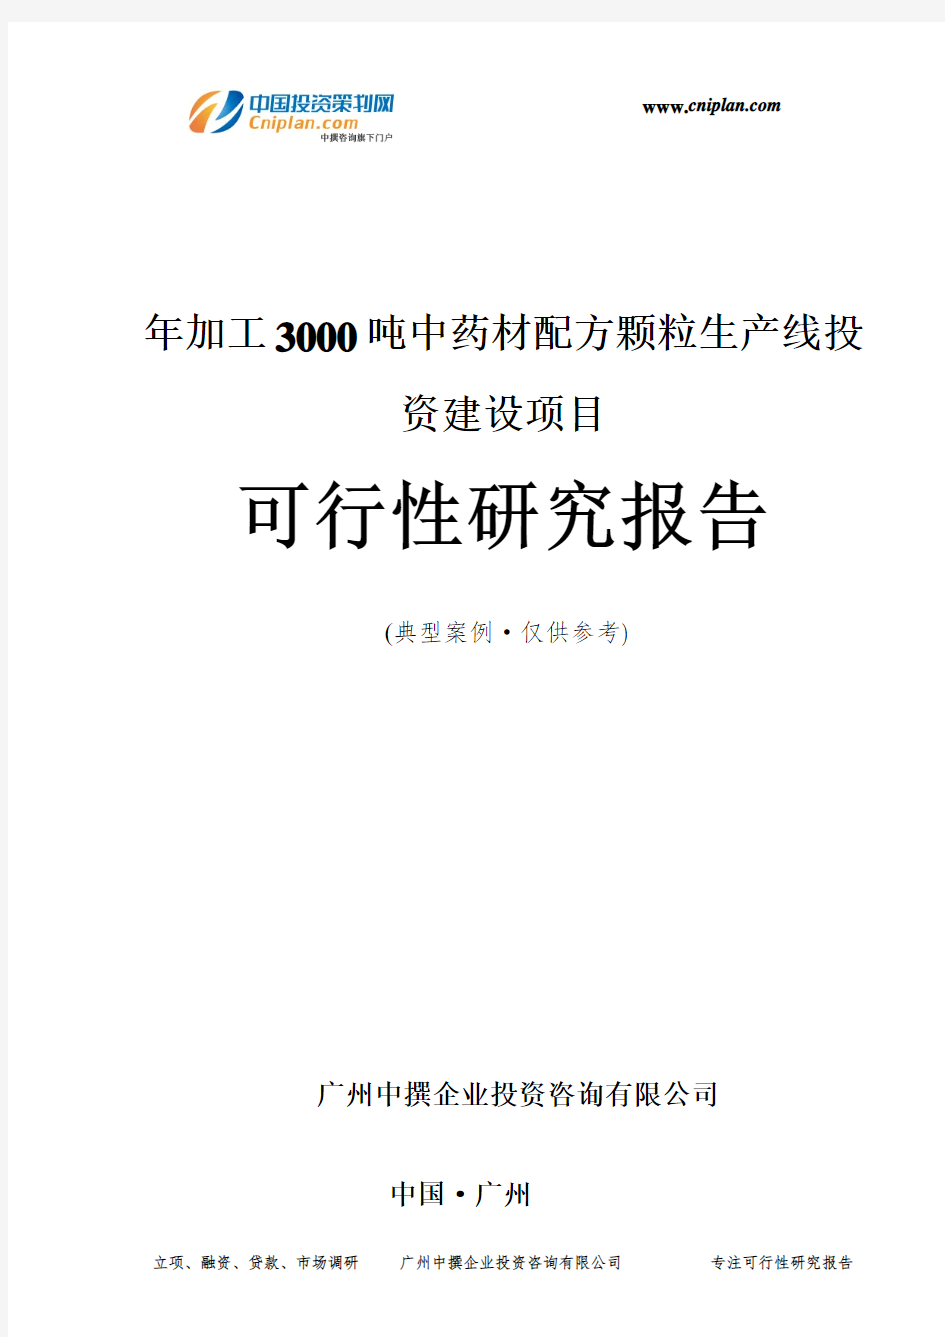 年加工3000吨中药材配方颗粒生产线投资建设项目可行性研究报告-广州中撰咨询